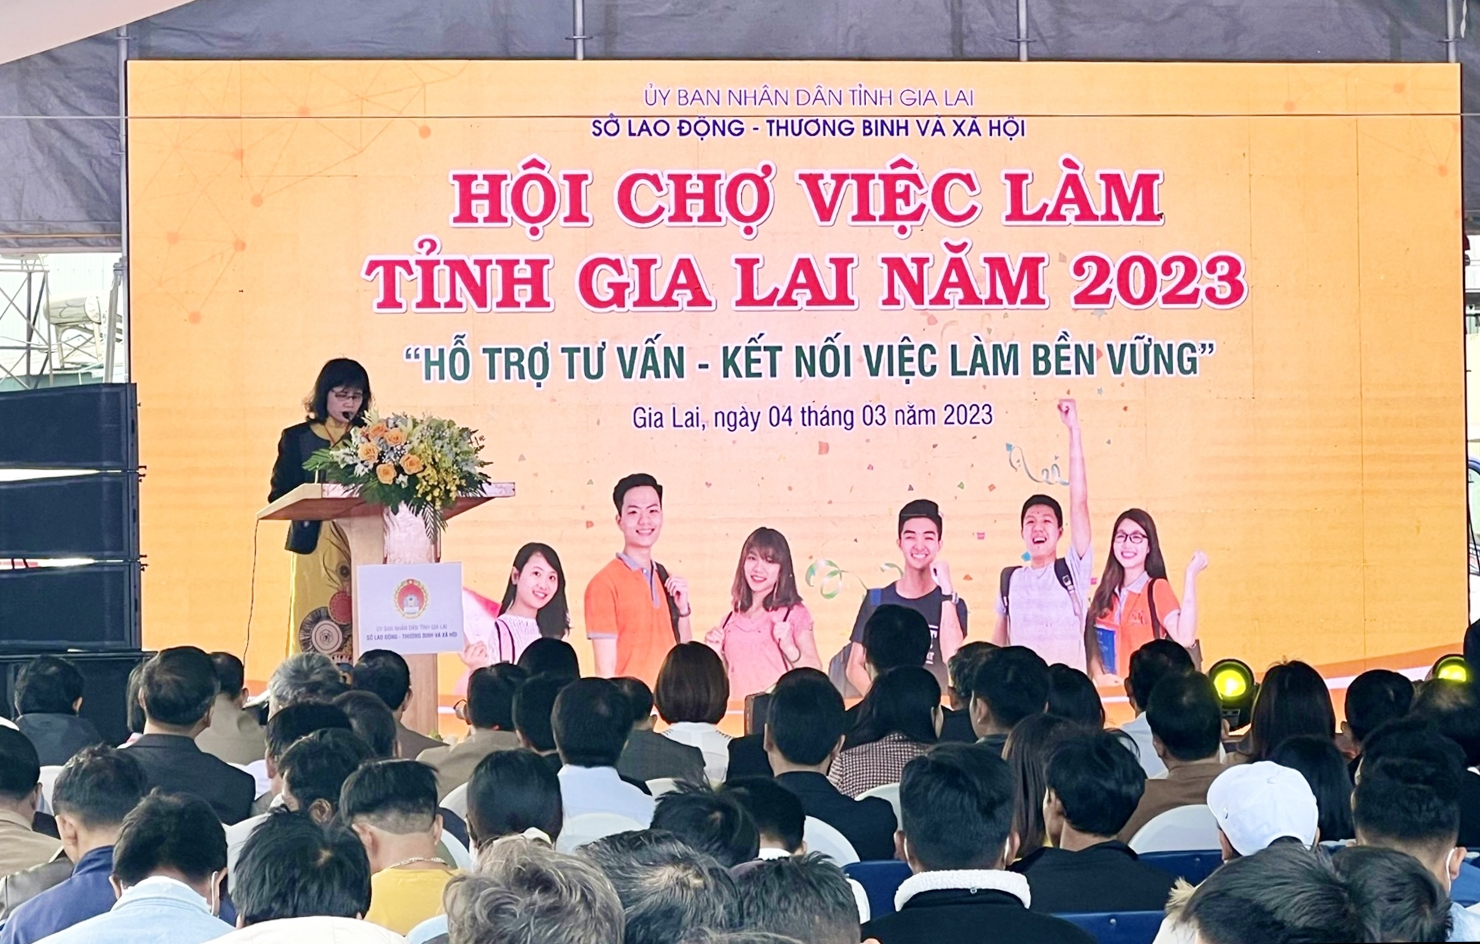 Hội chợ việc làm thu hút hơn 500 thanh niên, lao động trên địa bàn tỉnh Gia Lai tham gia